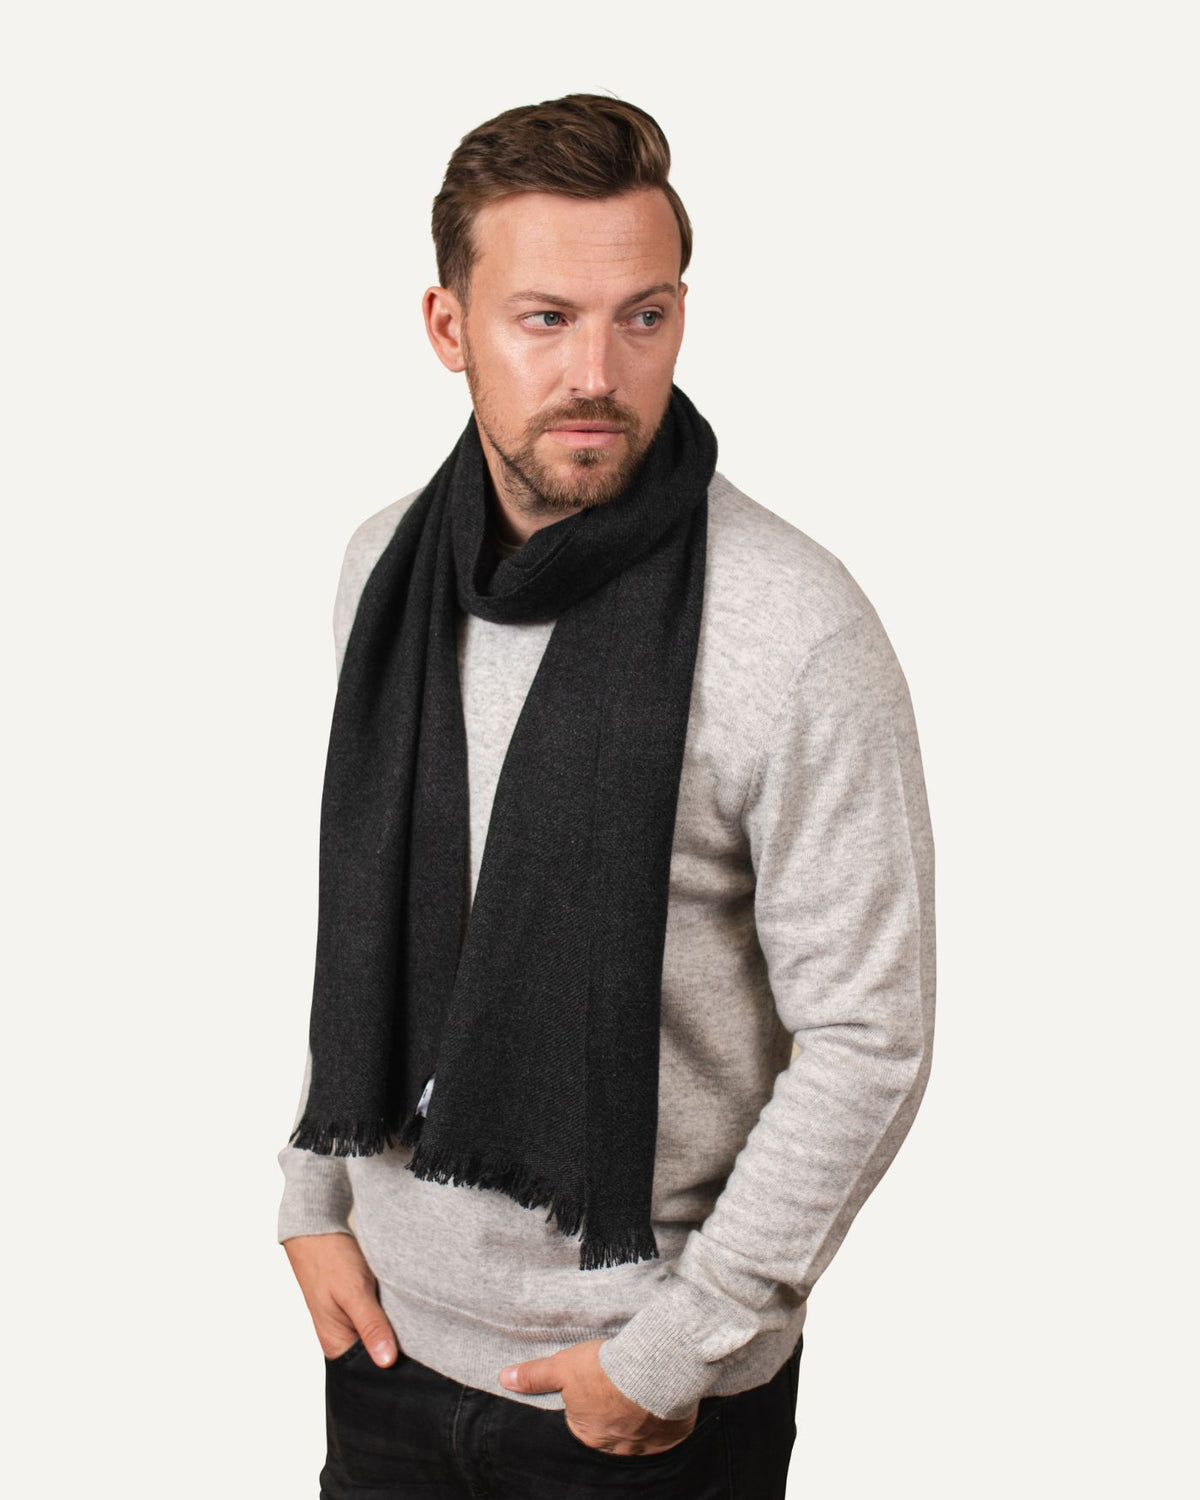 Woven cashmere scarf in dark grey for men by MOGLI & MARTINI #colour_anthracite